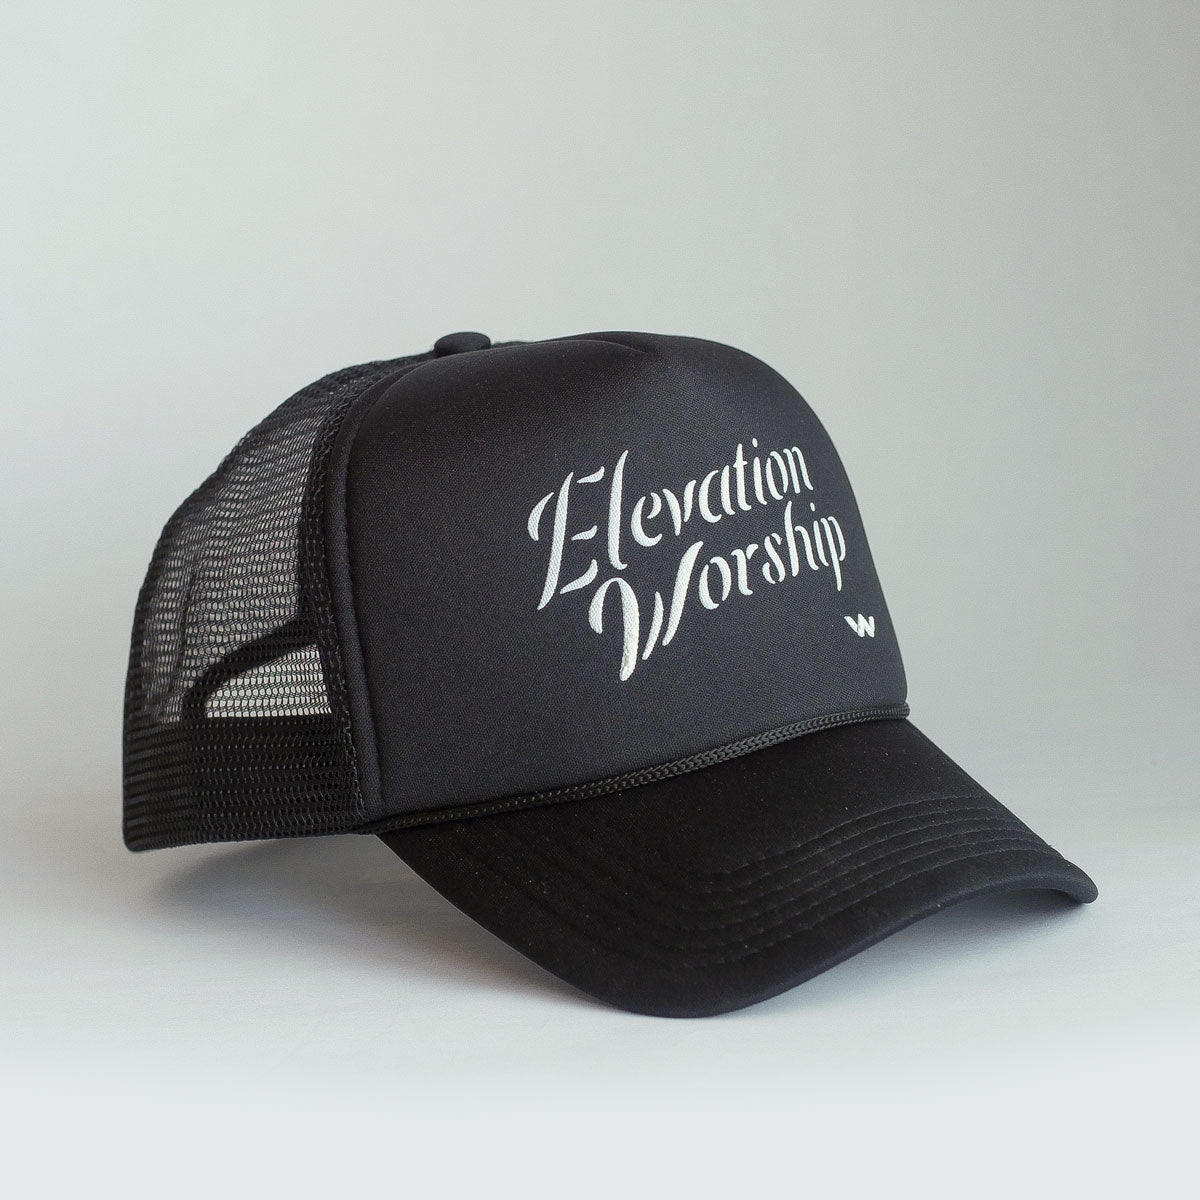 'Elevation Worship' Trucker Hat